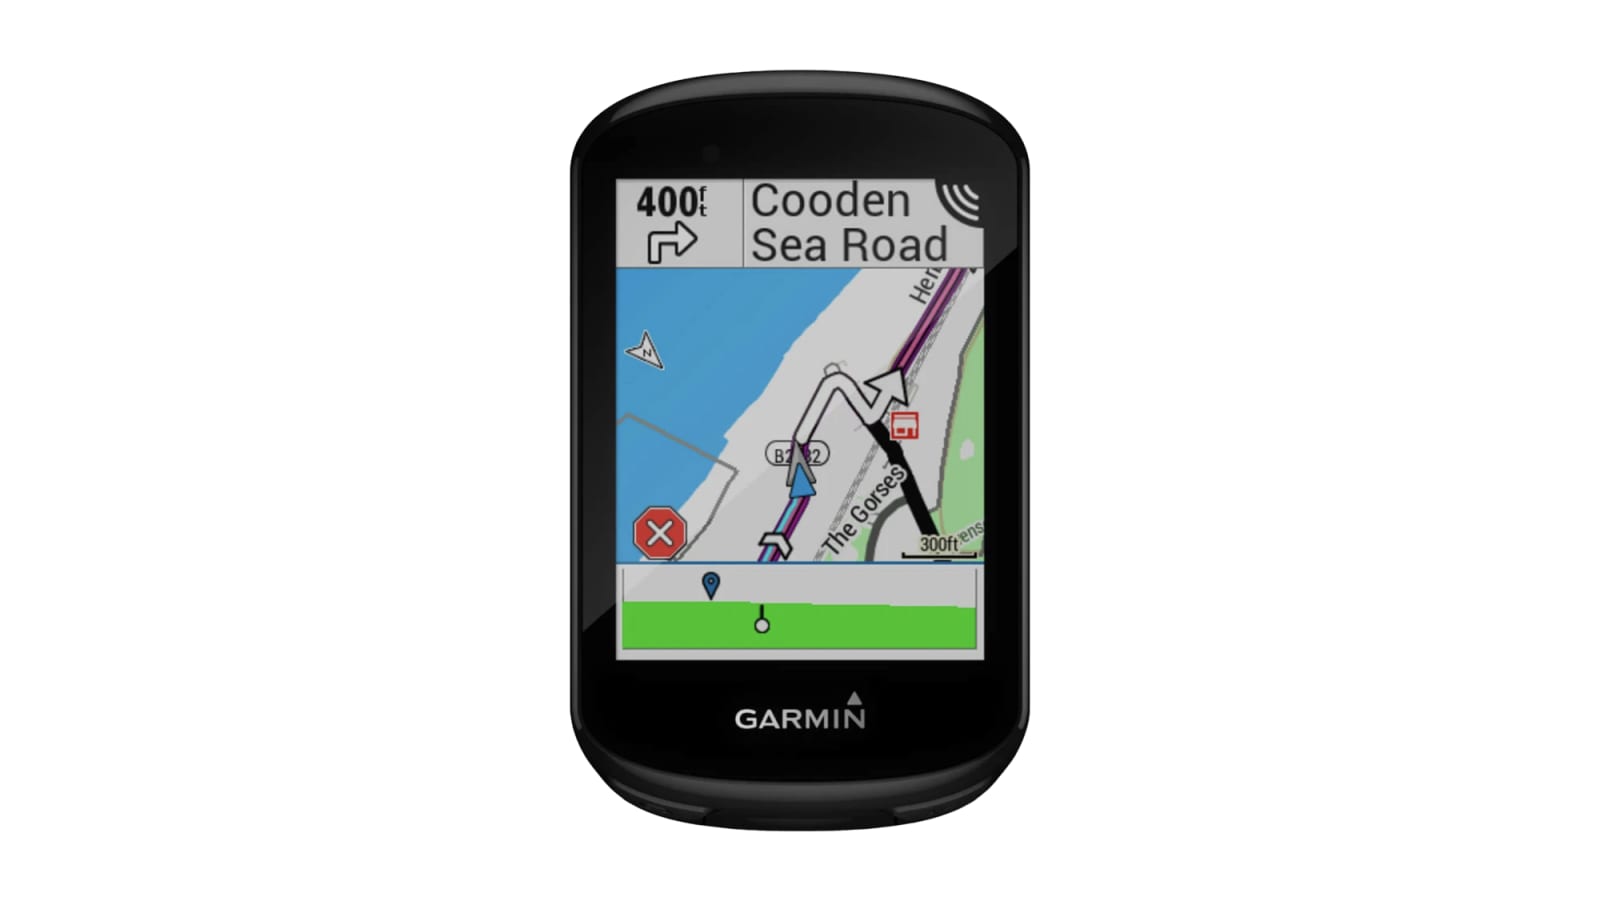 GARMIN GPS EDGE 830 010-02061-01